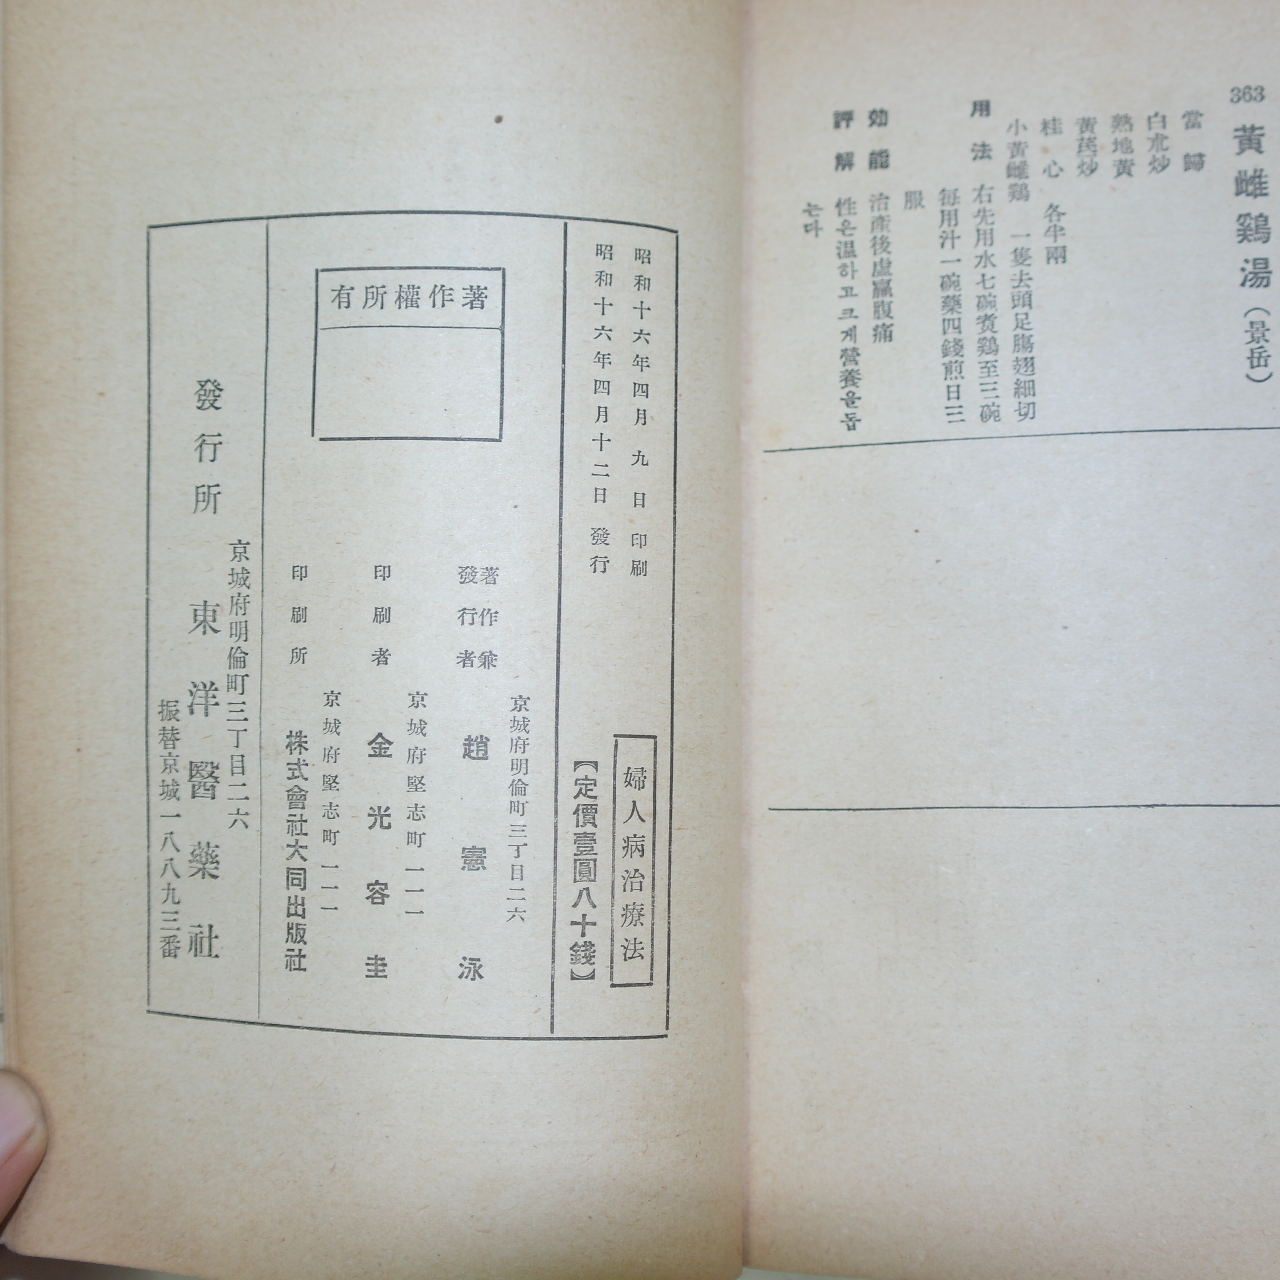 1941년 경성간행 조헌영(趙憲泳)의서 부인병치료법(婦人病治療法) 1책완질